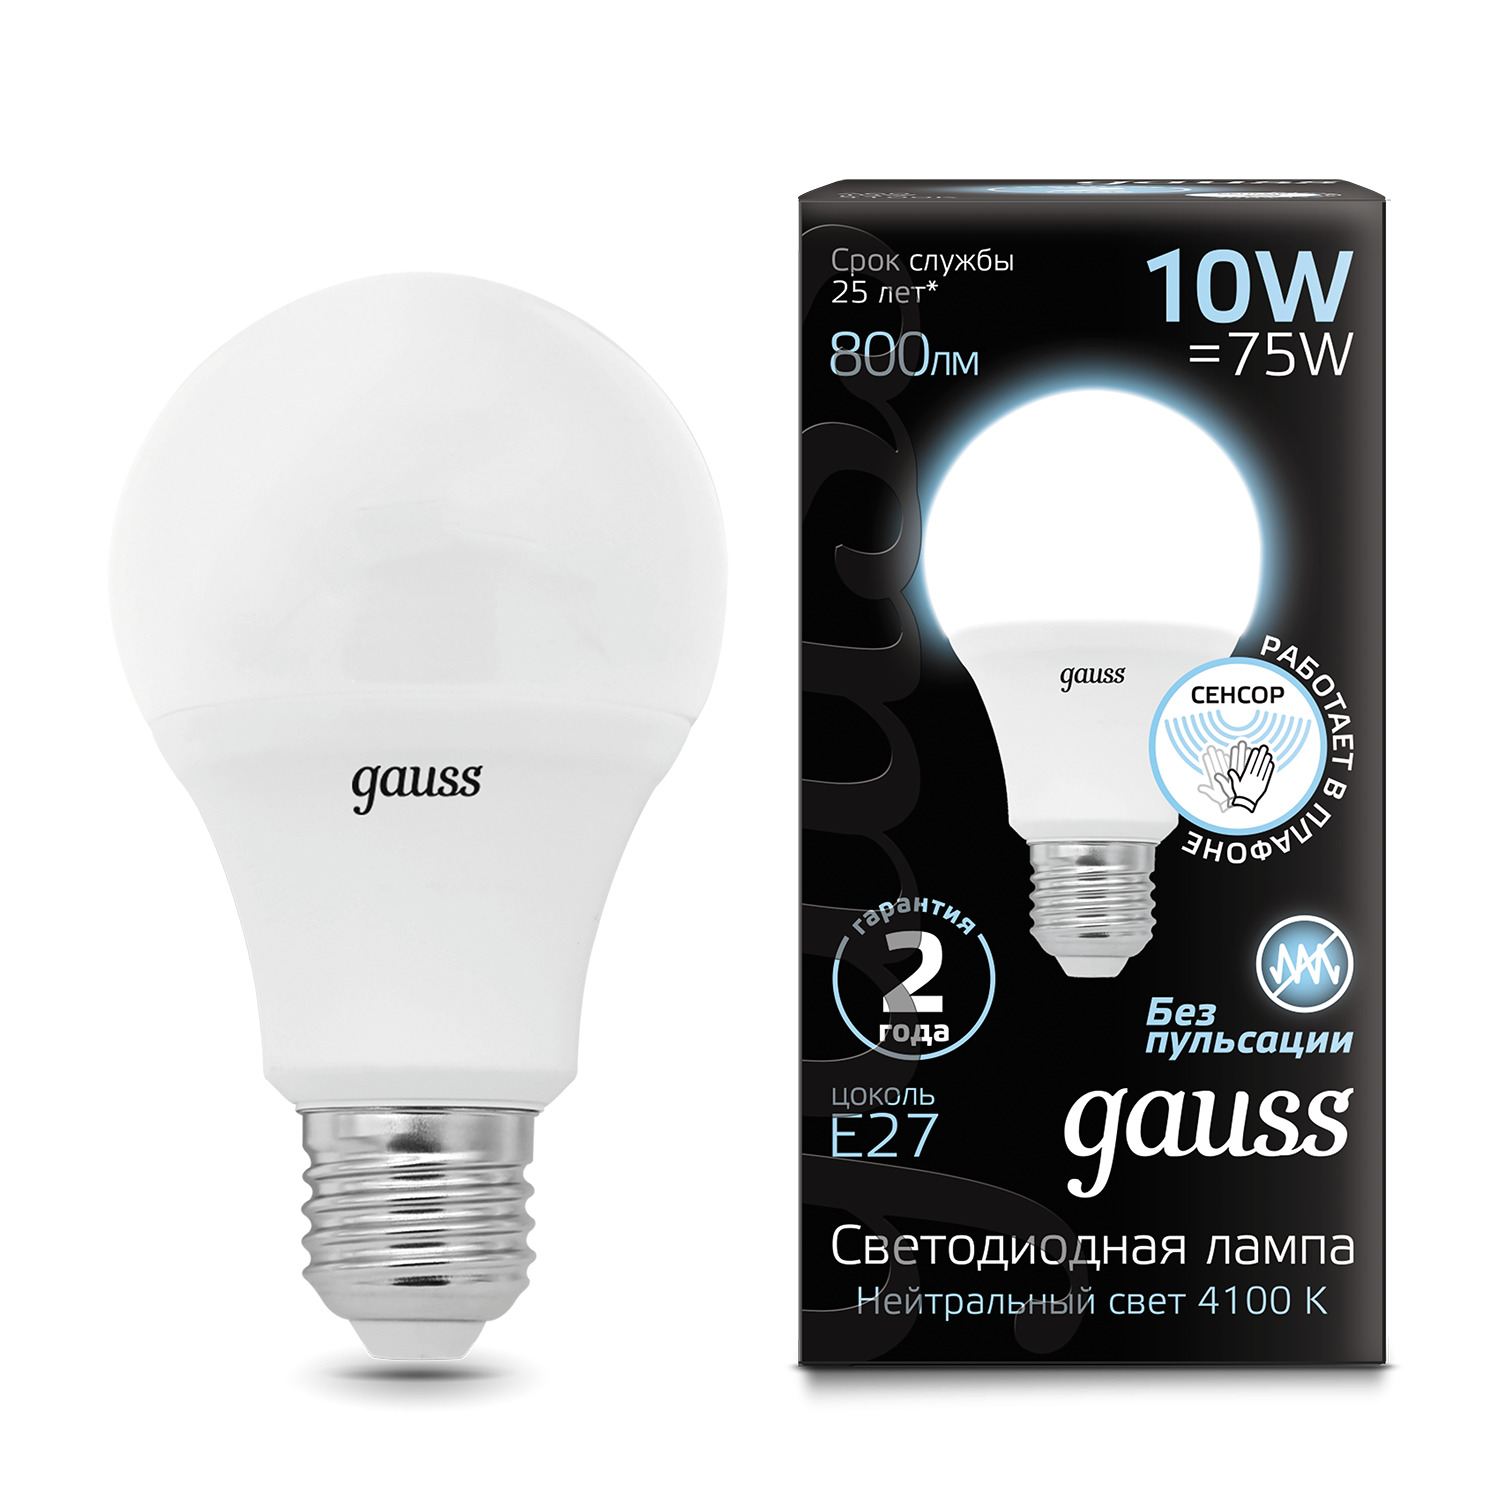 Лампа Gauss A60 10W 800lm 4100К E27 Сенсор LED